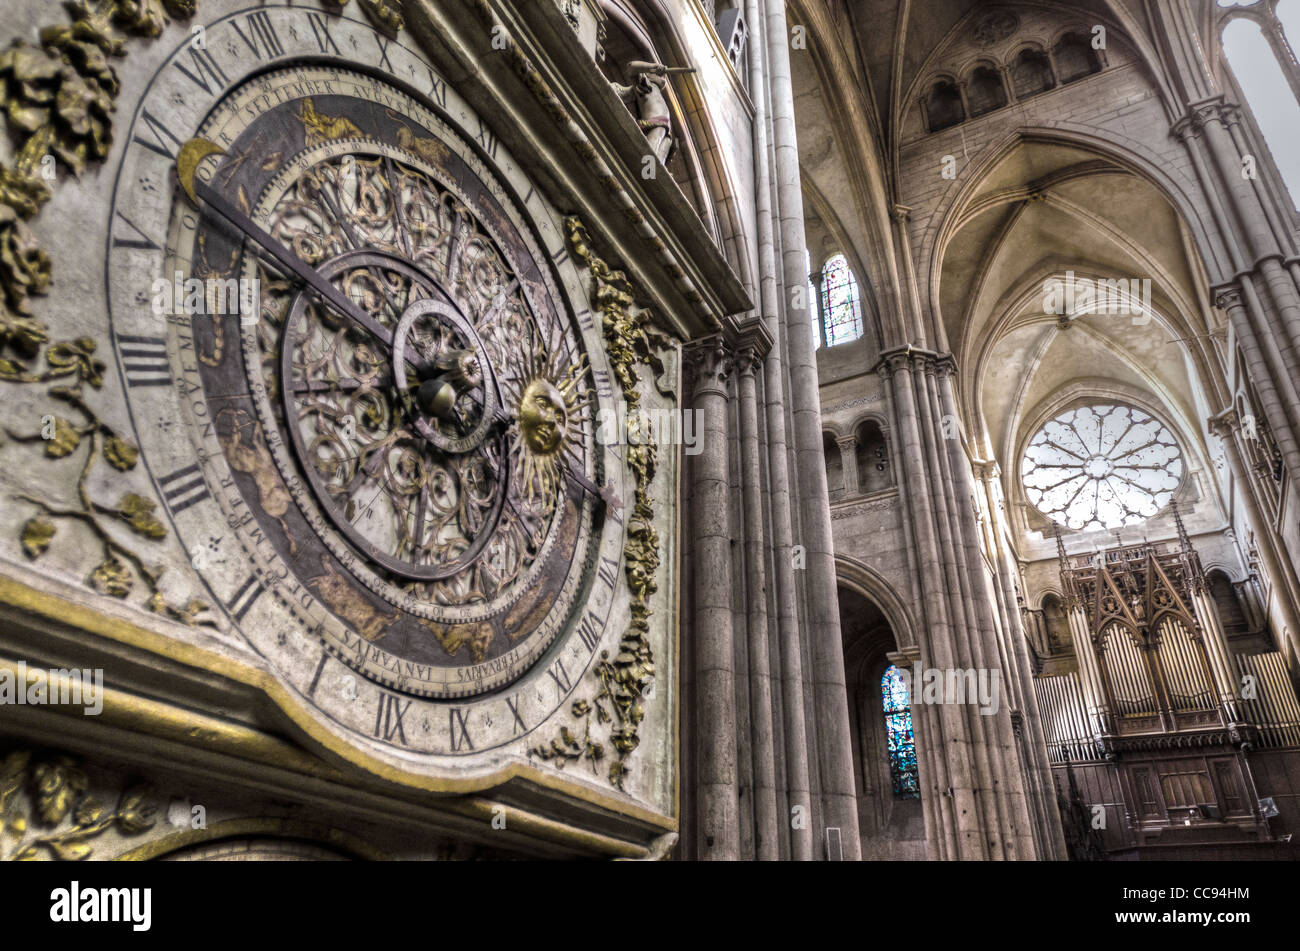 Die astronomische Uhr in der Kathedrale von Saint-Jean, Altstadt Vieux Lyon, Frankreich (UNESCO-Weltkulturerbe) Stockfoto